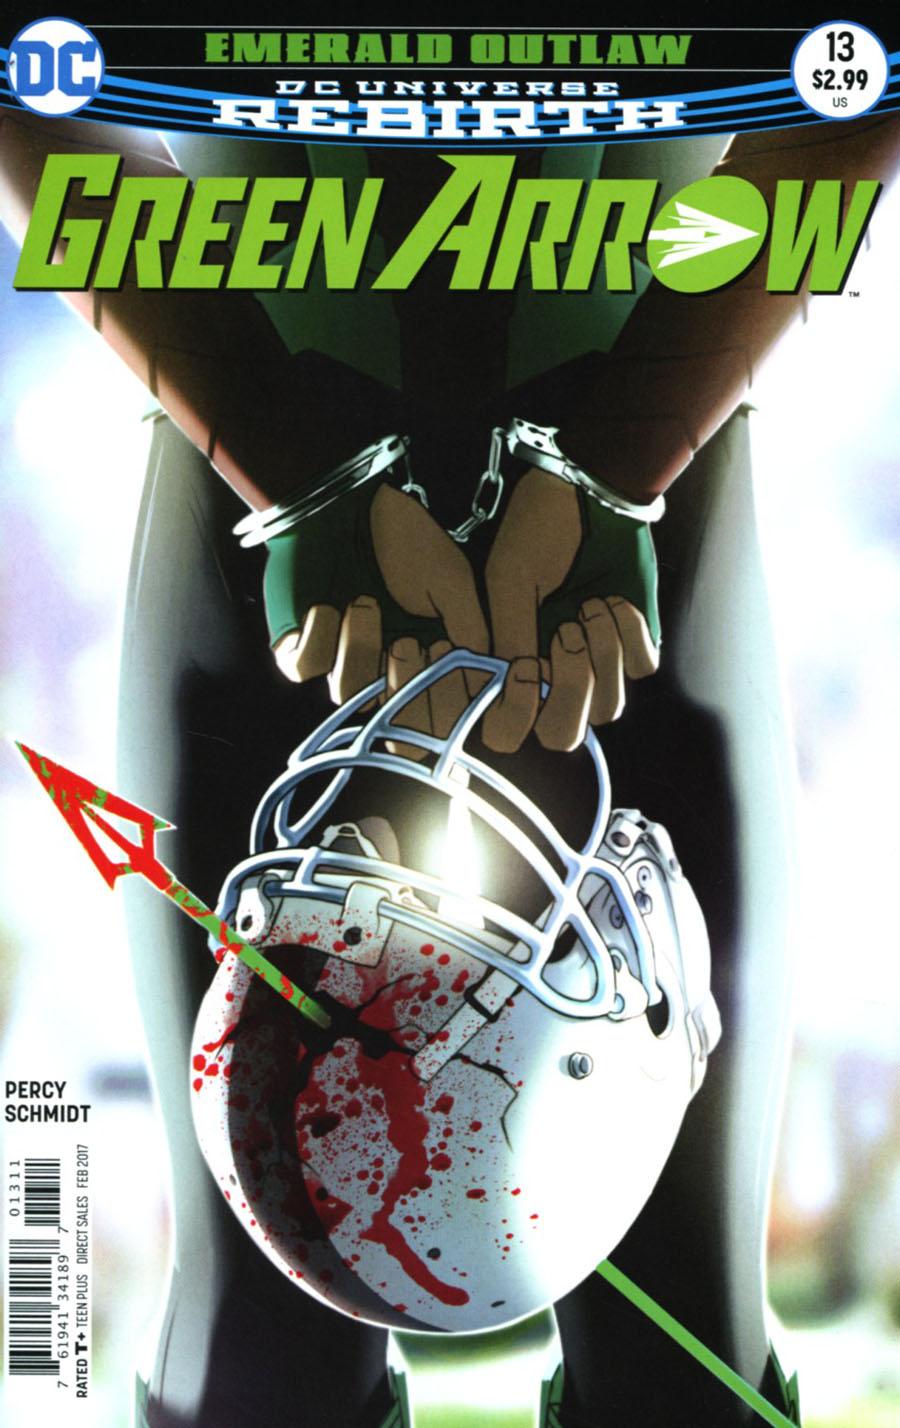 Green Arrow Vol. 7 #13